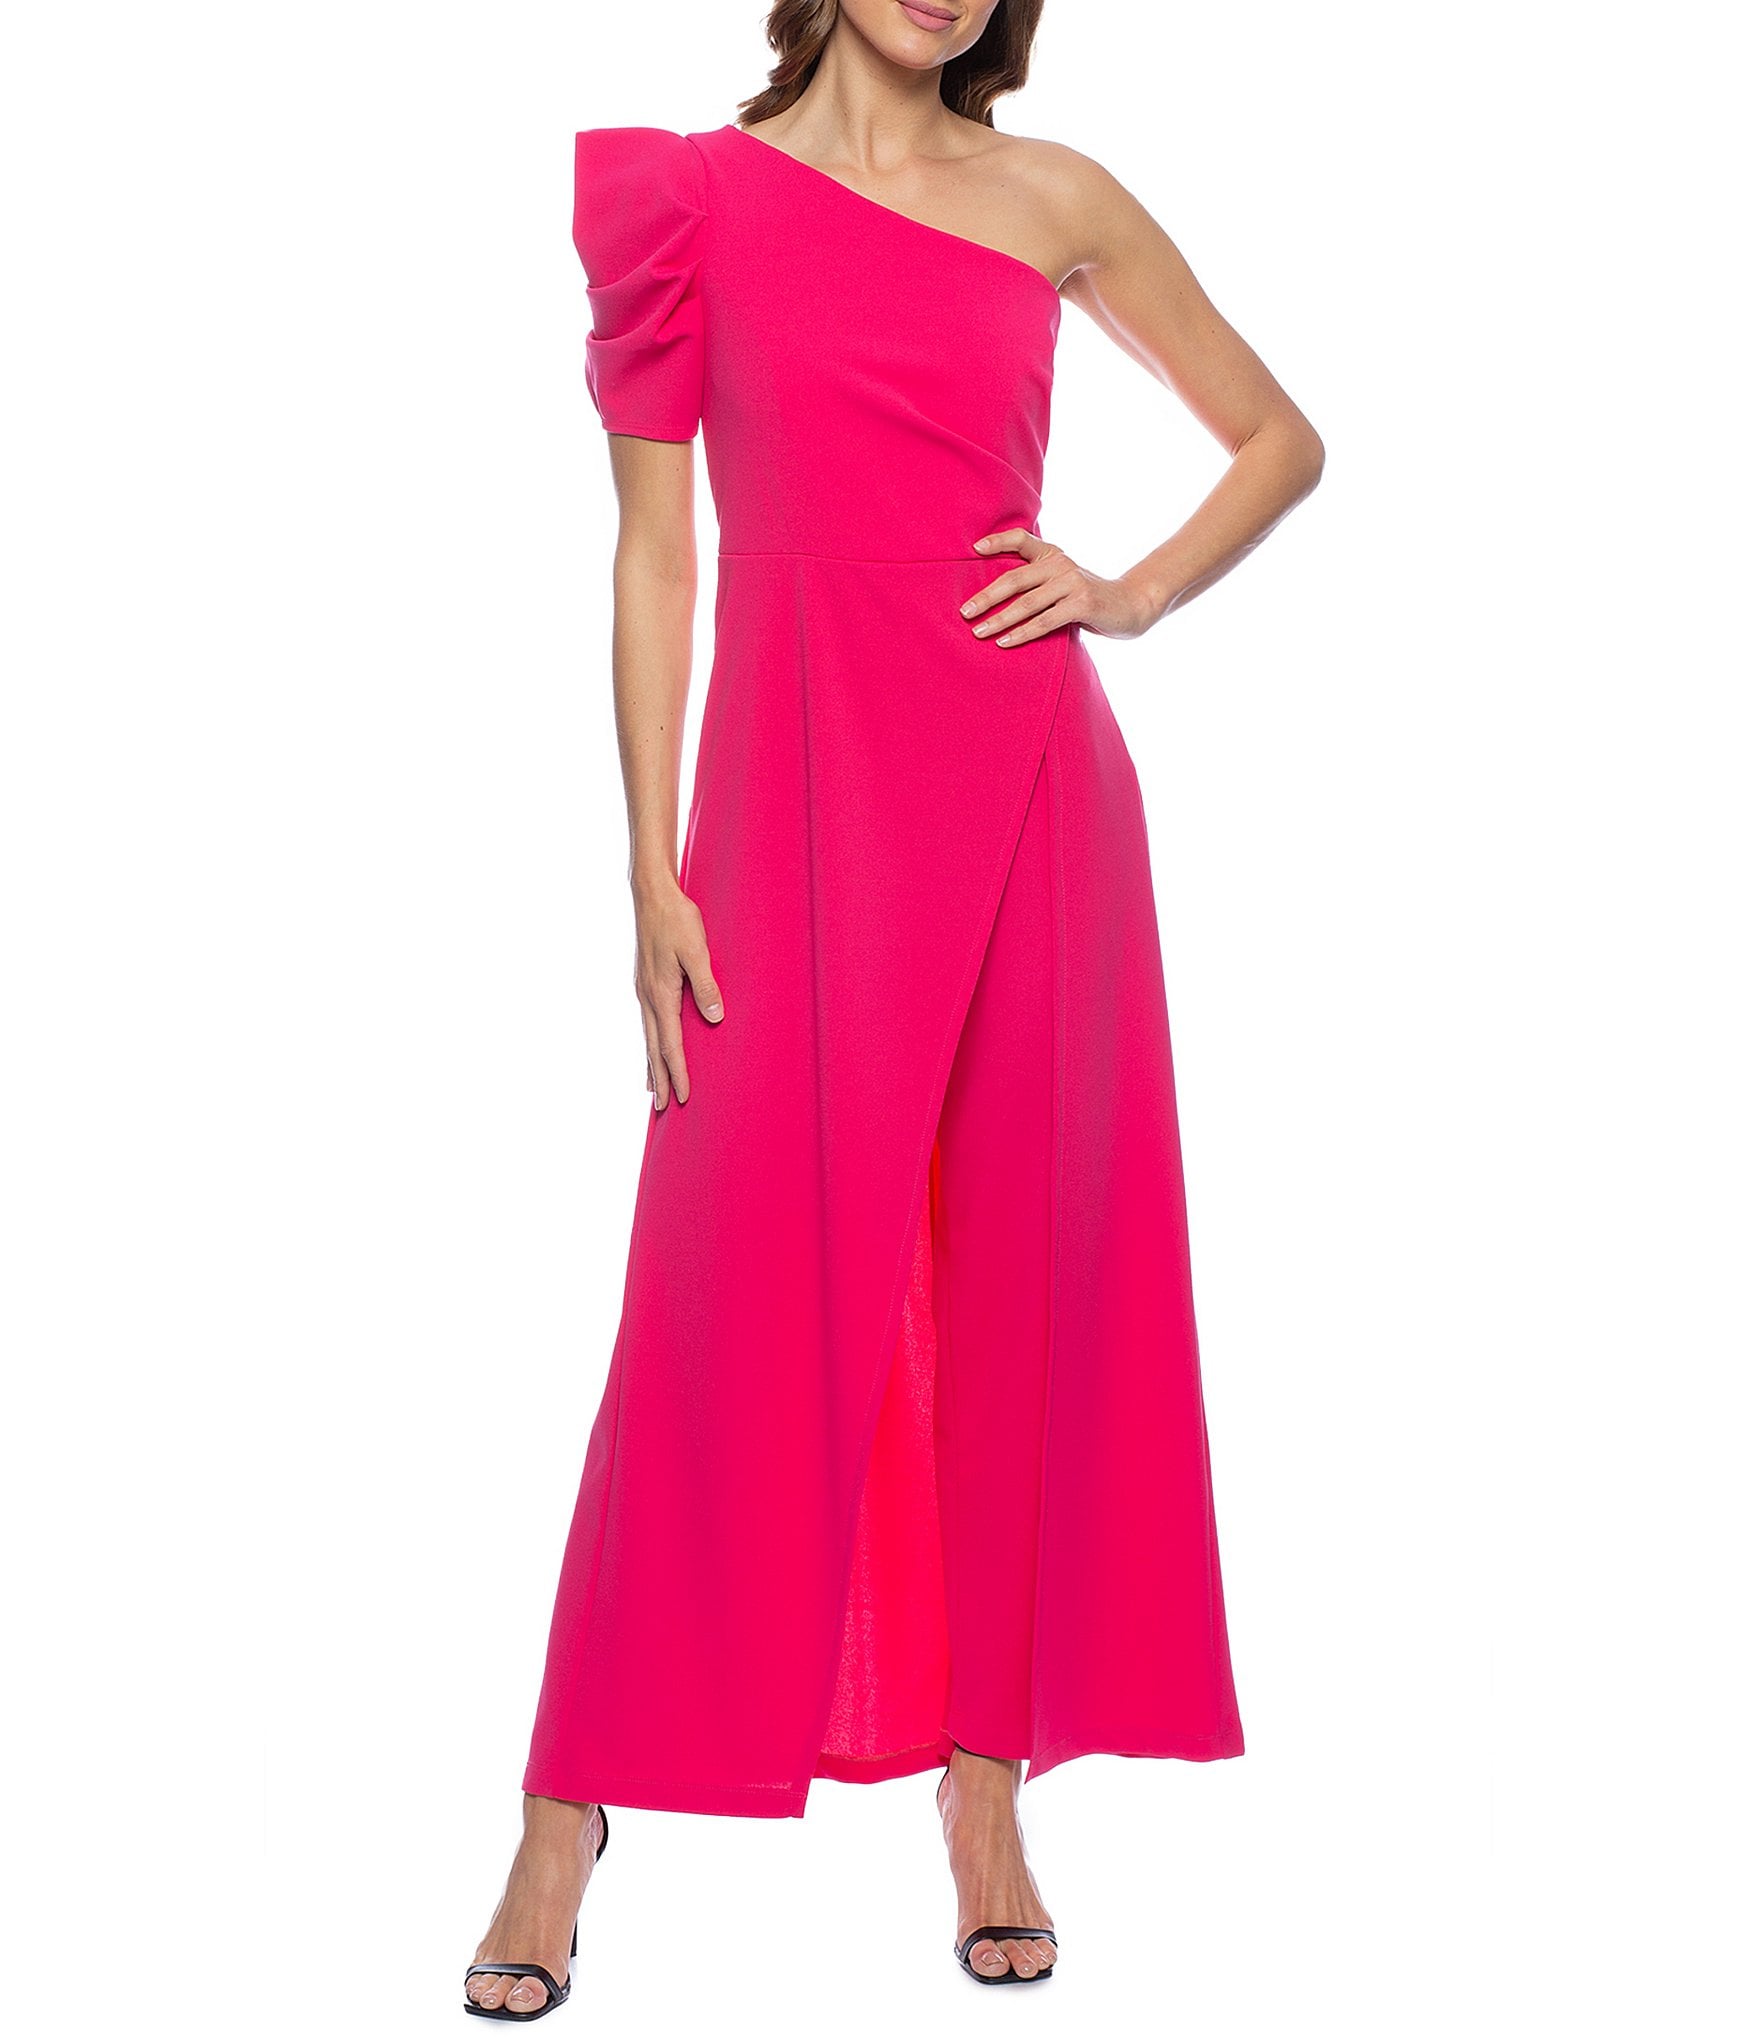 size 16 dress: Women's Formal Dresses & Evening Gowns | Dillard's